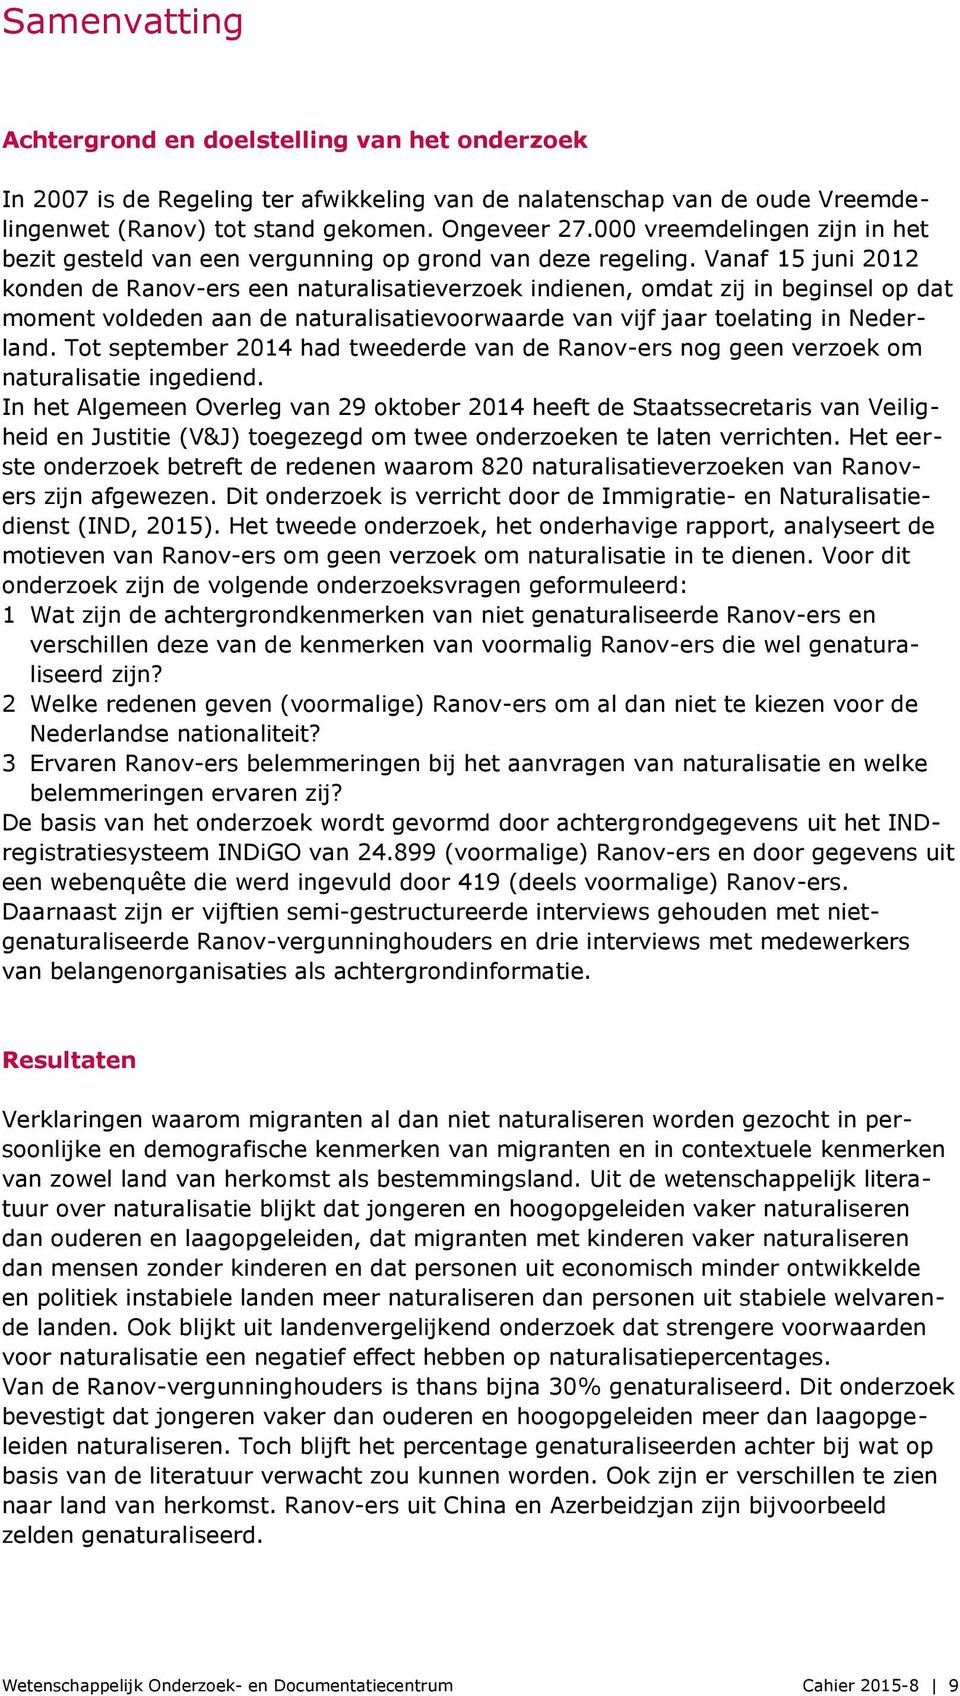 Vanaf 15 juni 2012 konden de Ranov-ers een naturalisatieverzoek indienen, omdat zij in beginsel op dat moment voldeden aan de naturalisatievoorwaarde van vijf jaar toelating in Nederland.